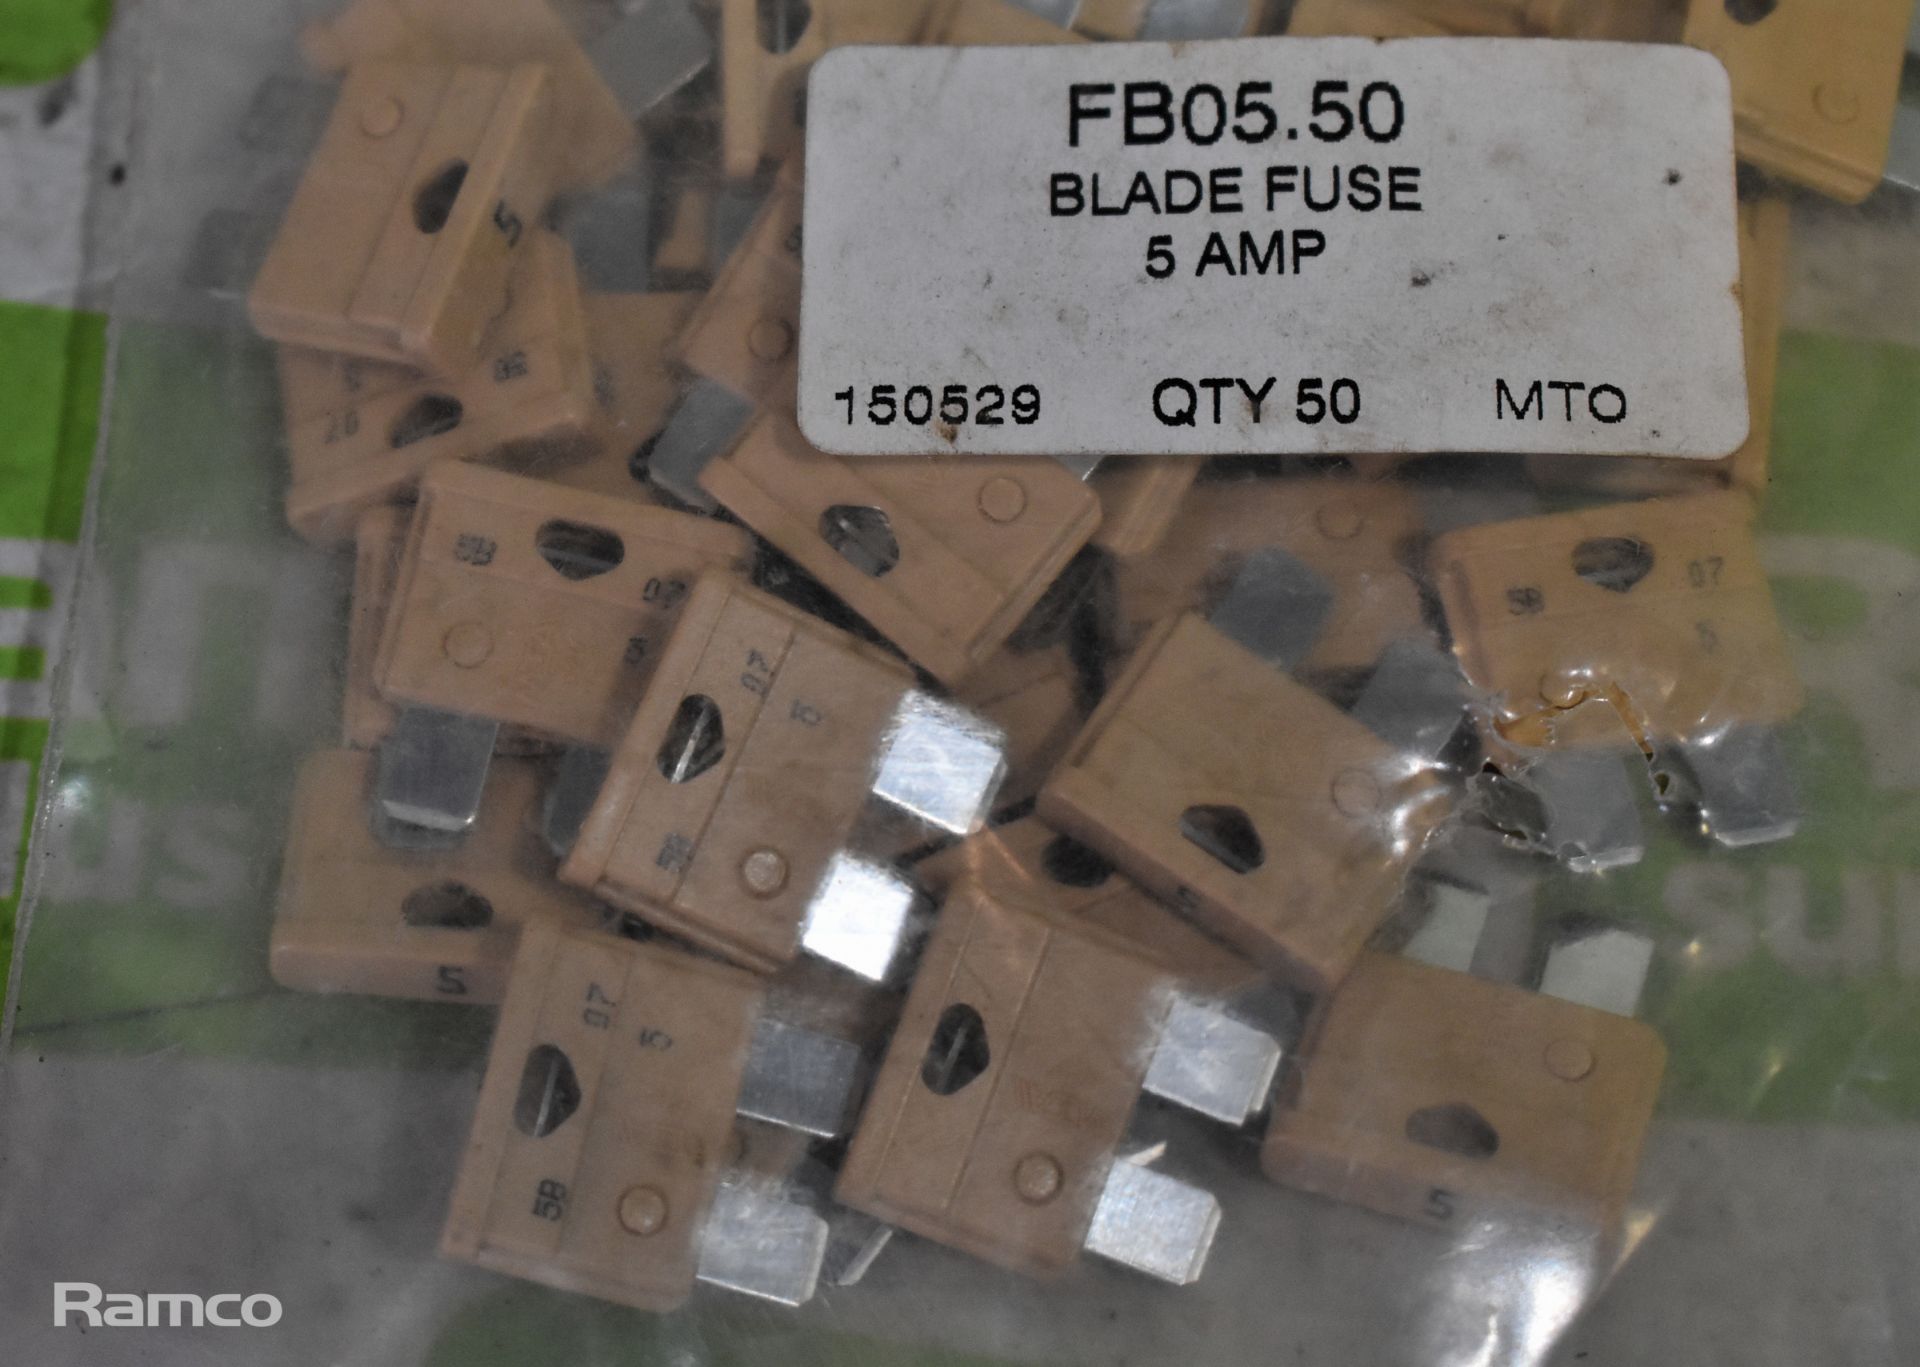 8X FB20.50 yellow 20 amp fuses (50 per pack), 30x Packs of 50 FB05.50 5 AMP blade fuses - Image 3 of 5